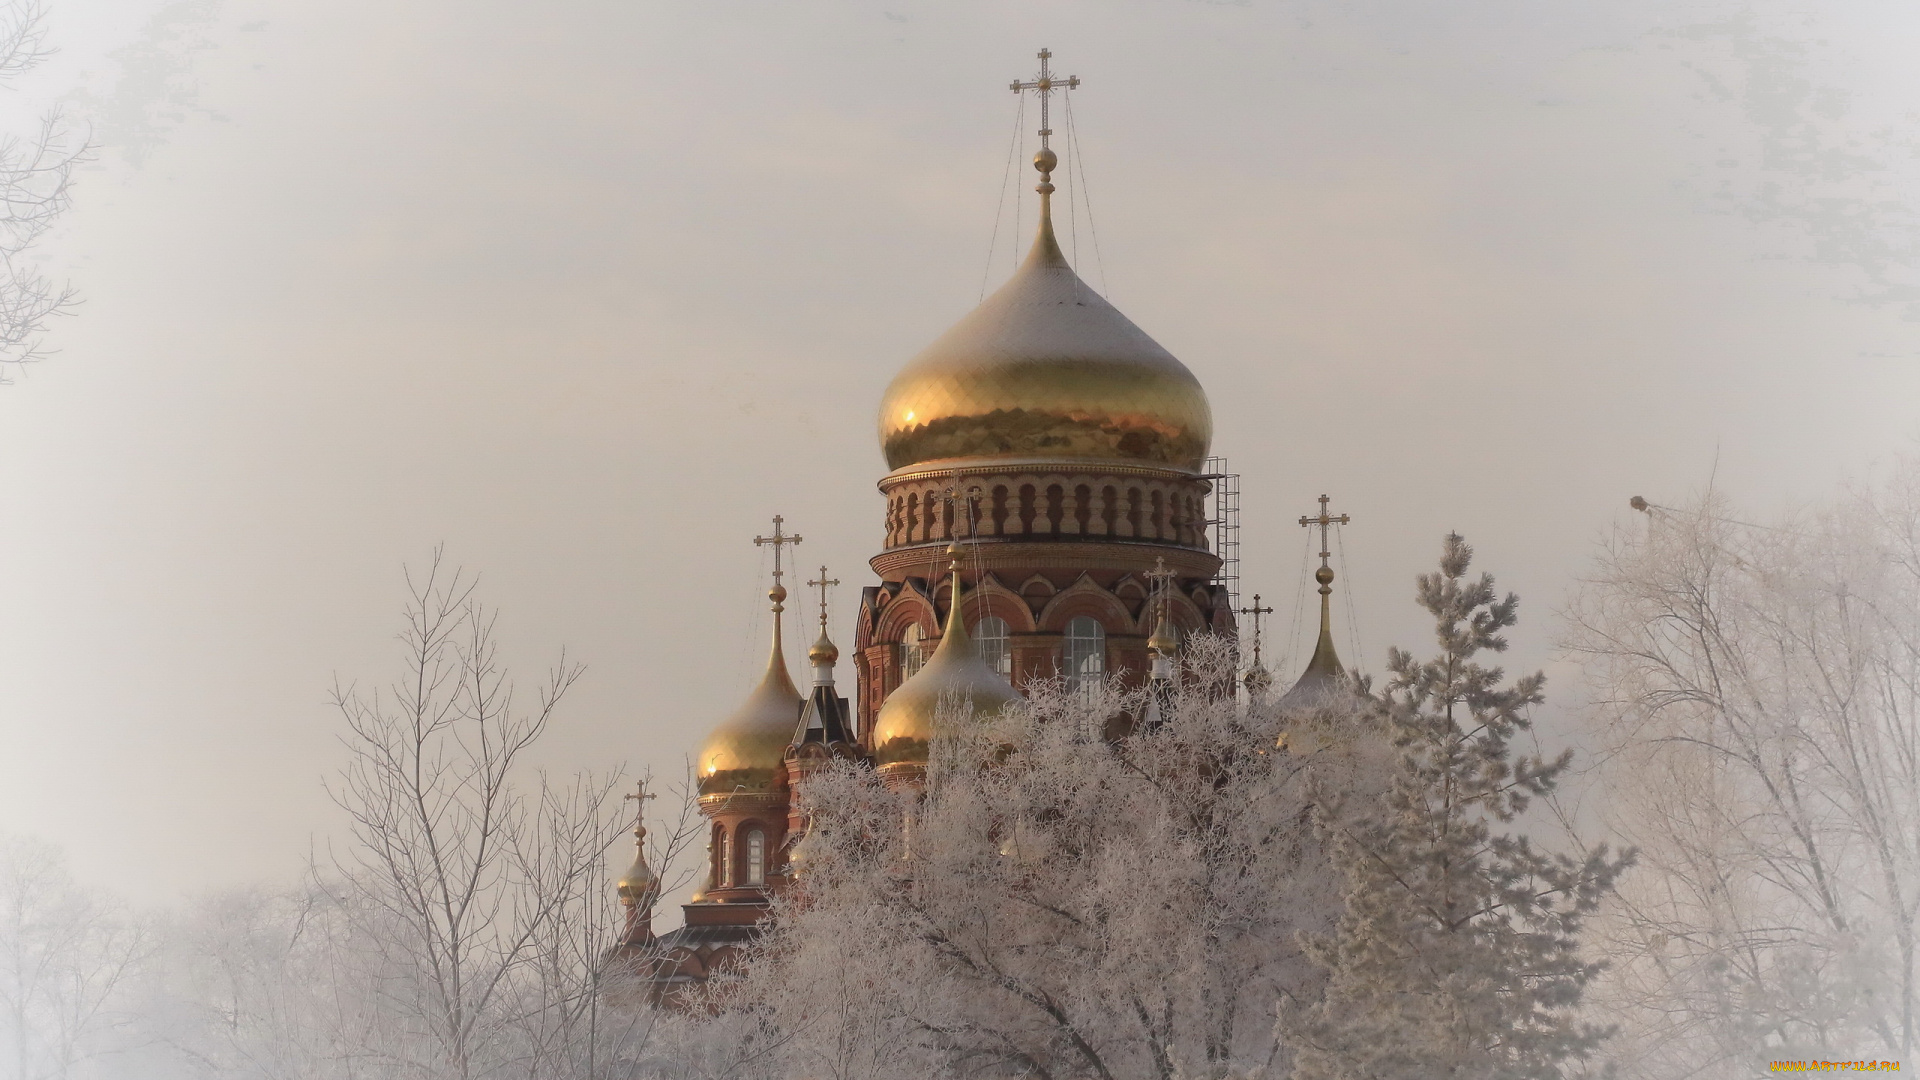 города, -, православные, церкви, , монастыри, зима, деревья, иней, красота, золотые, купола, церковь